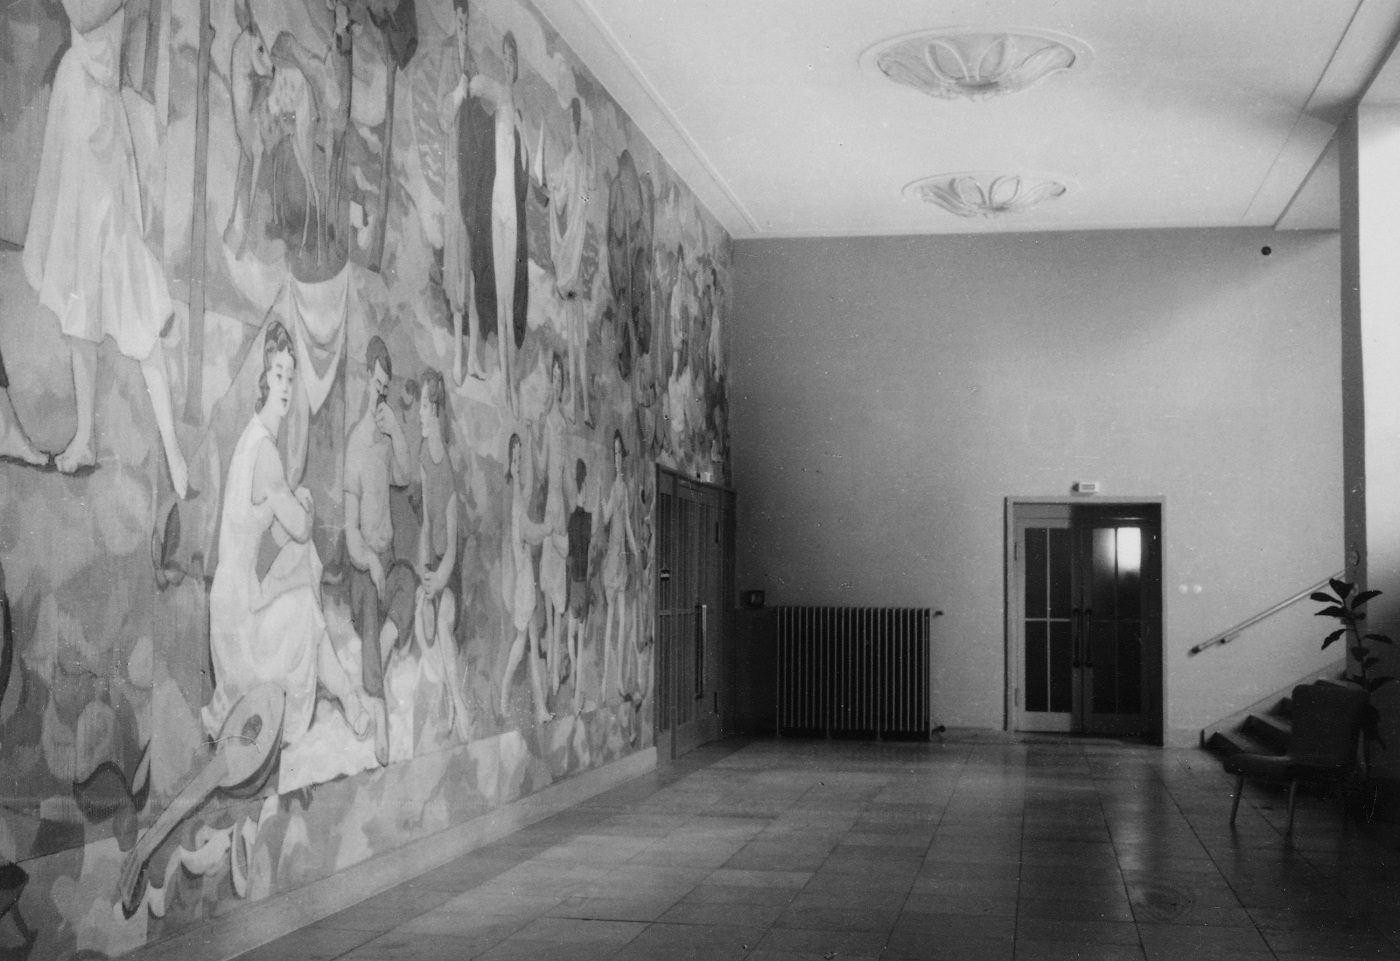 Wandgemälde „Lebensfreude“ von Gerhard Richter (1956) im Treppenfoyer Süd des Deutschen Hygiene-Museums; Zustand undatiert © Sammlung DHMD für das Wandgemälde: Gerhard Richter 2024 (01022024), courtesy Gerhard Richter Archiv Dresden